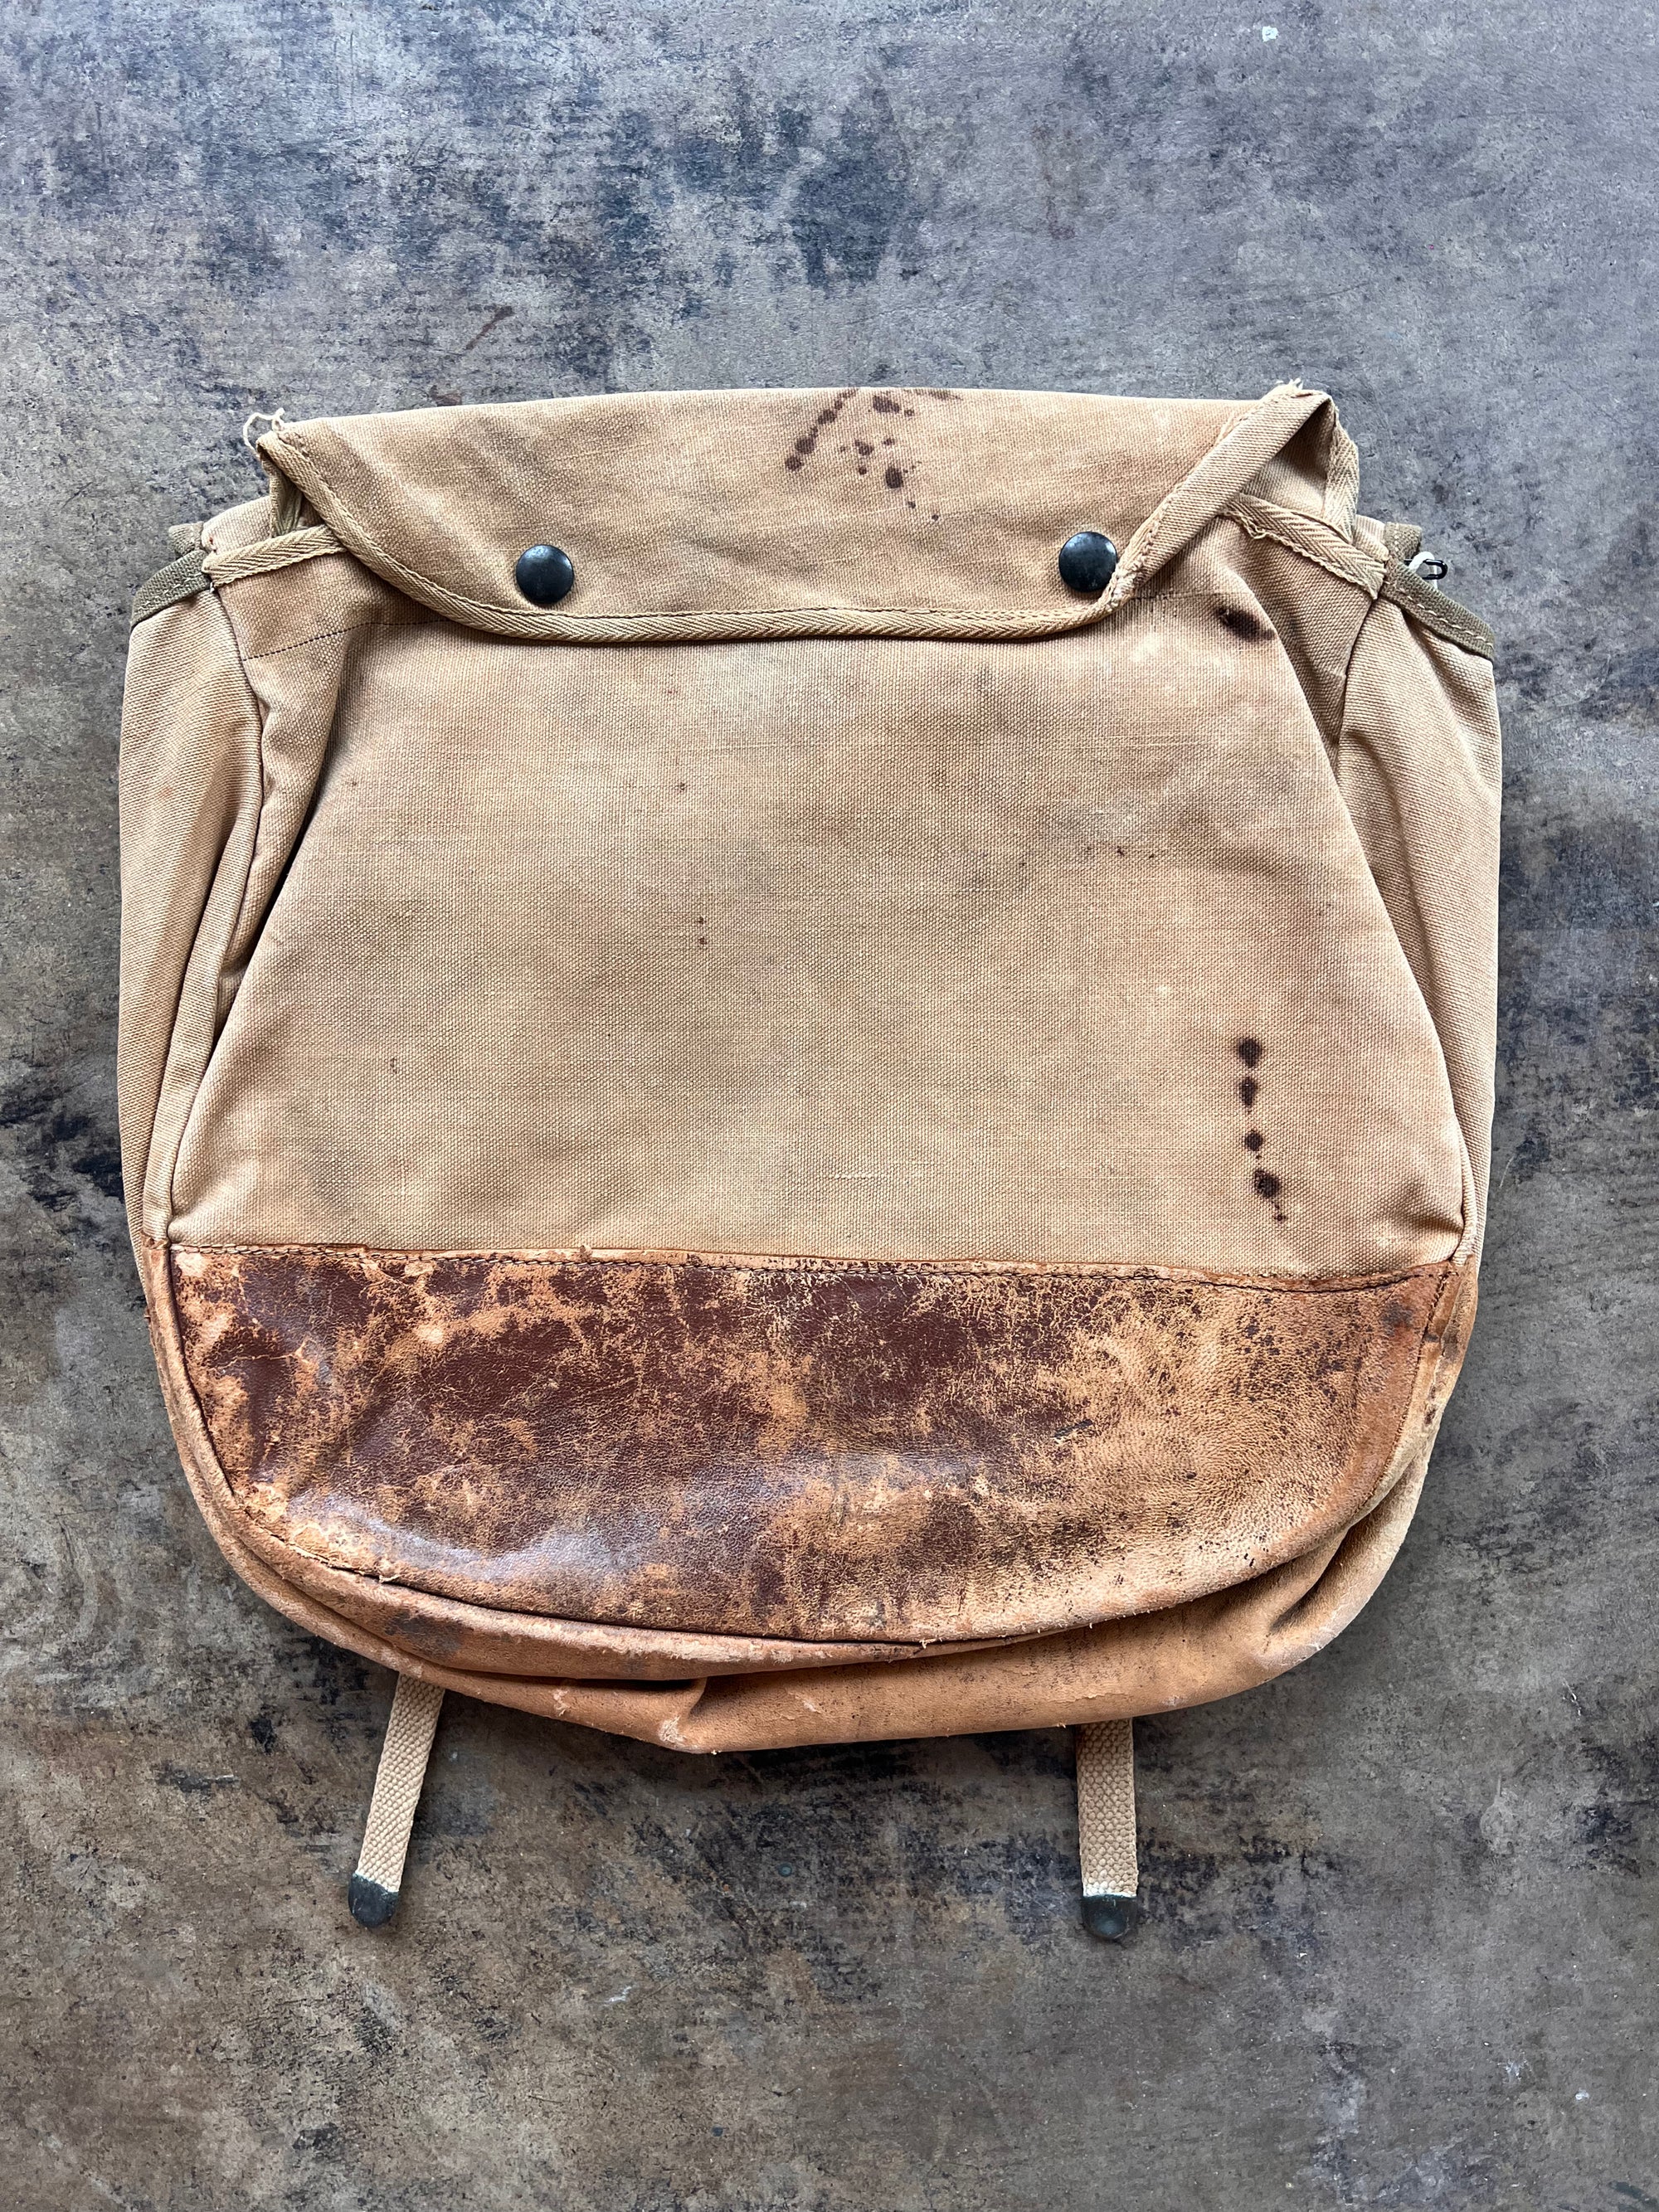 Vintage Tan "H. Howe" Belt Bag